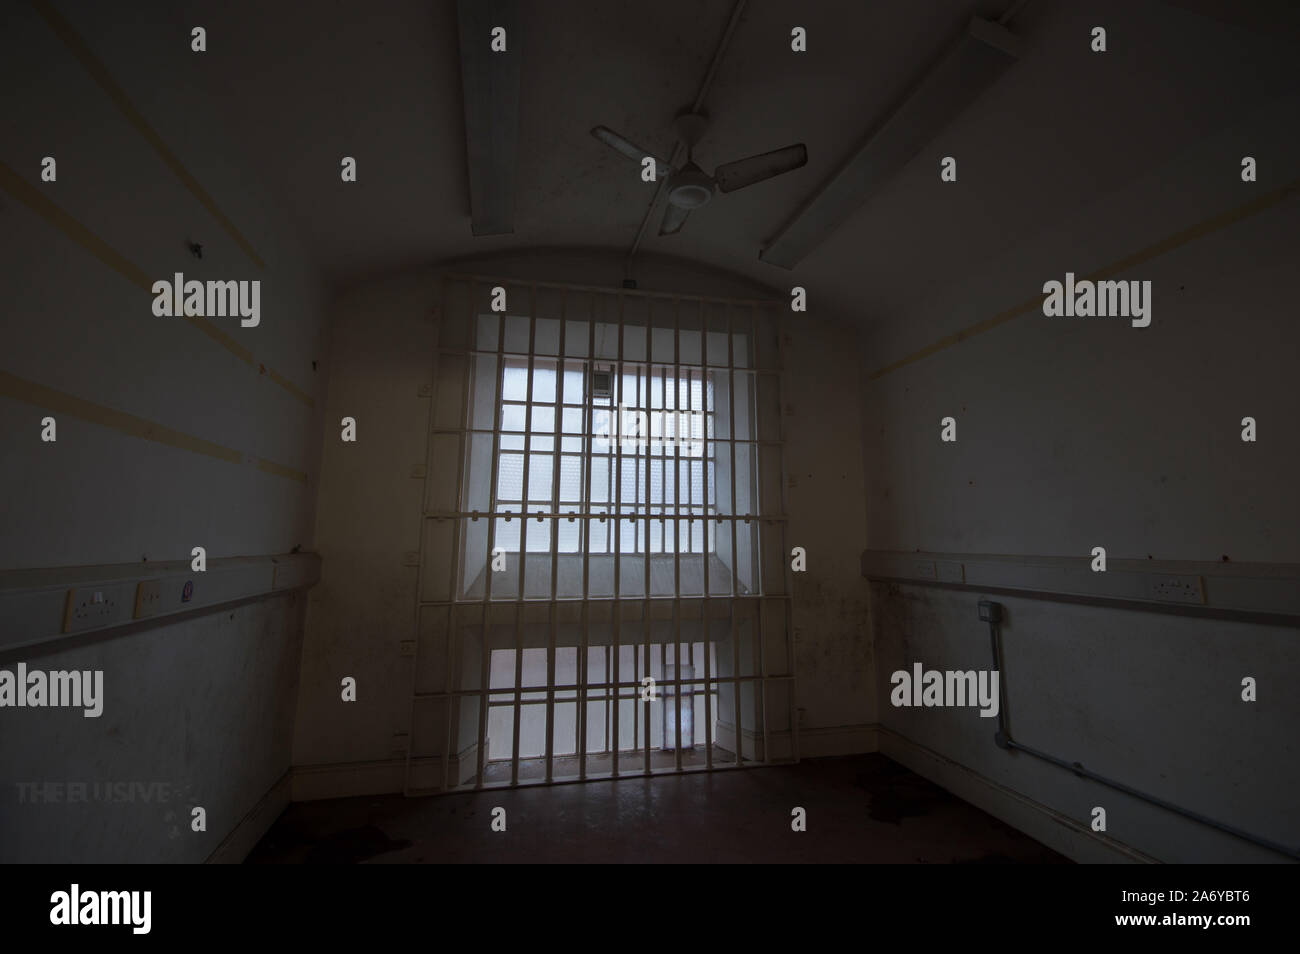 GLOUCESTER: dumpfes Licht strahlt durch das Gefängnis. Schaurige Bilder aus Most Haunted "Gefängnis der britischen wo Serienmörder Fred West gesperrt war Captur Stockfoto